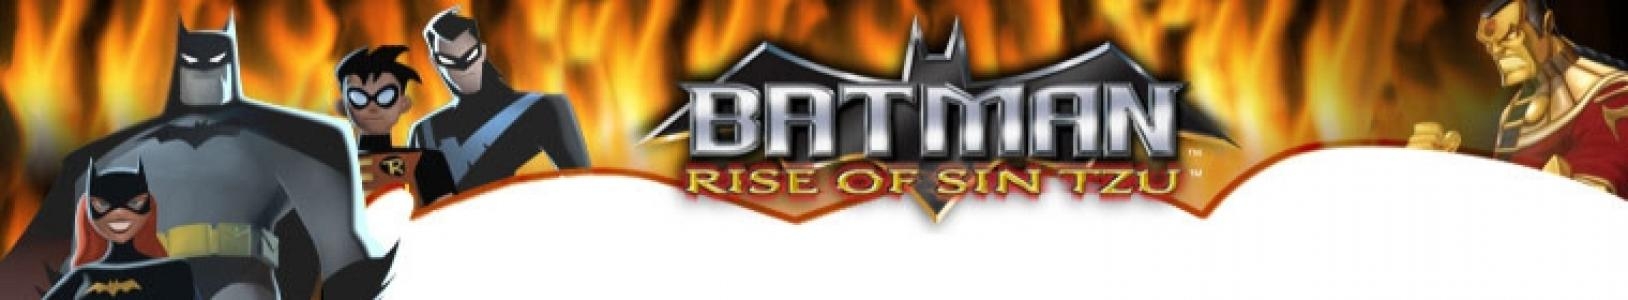 Batman: Rise of Sin Tzu banner